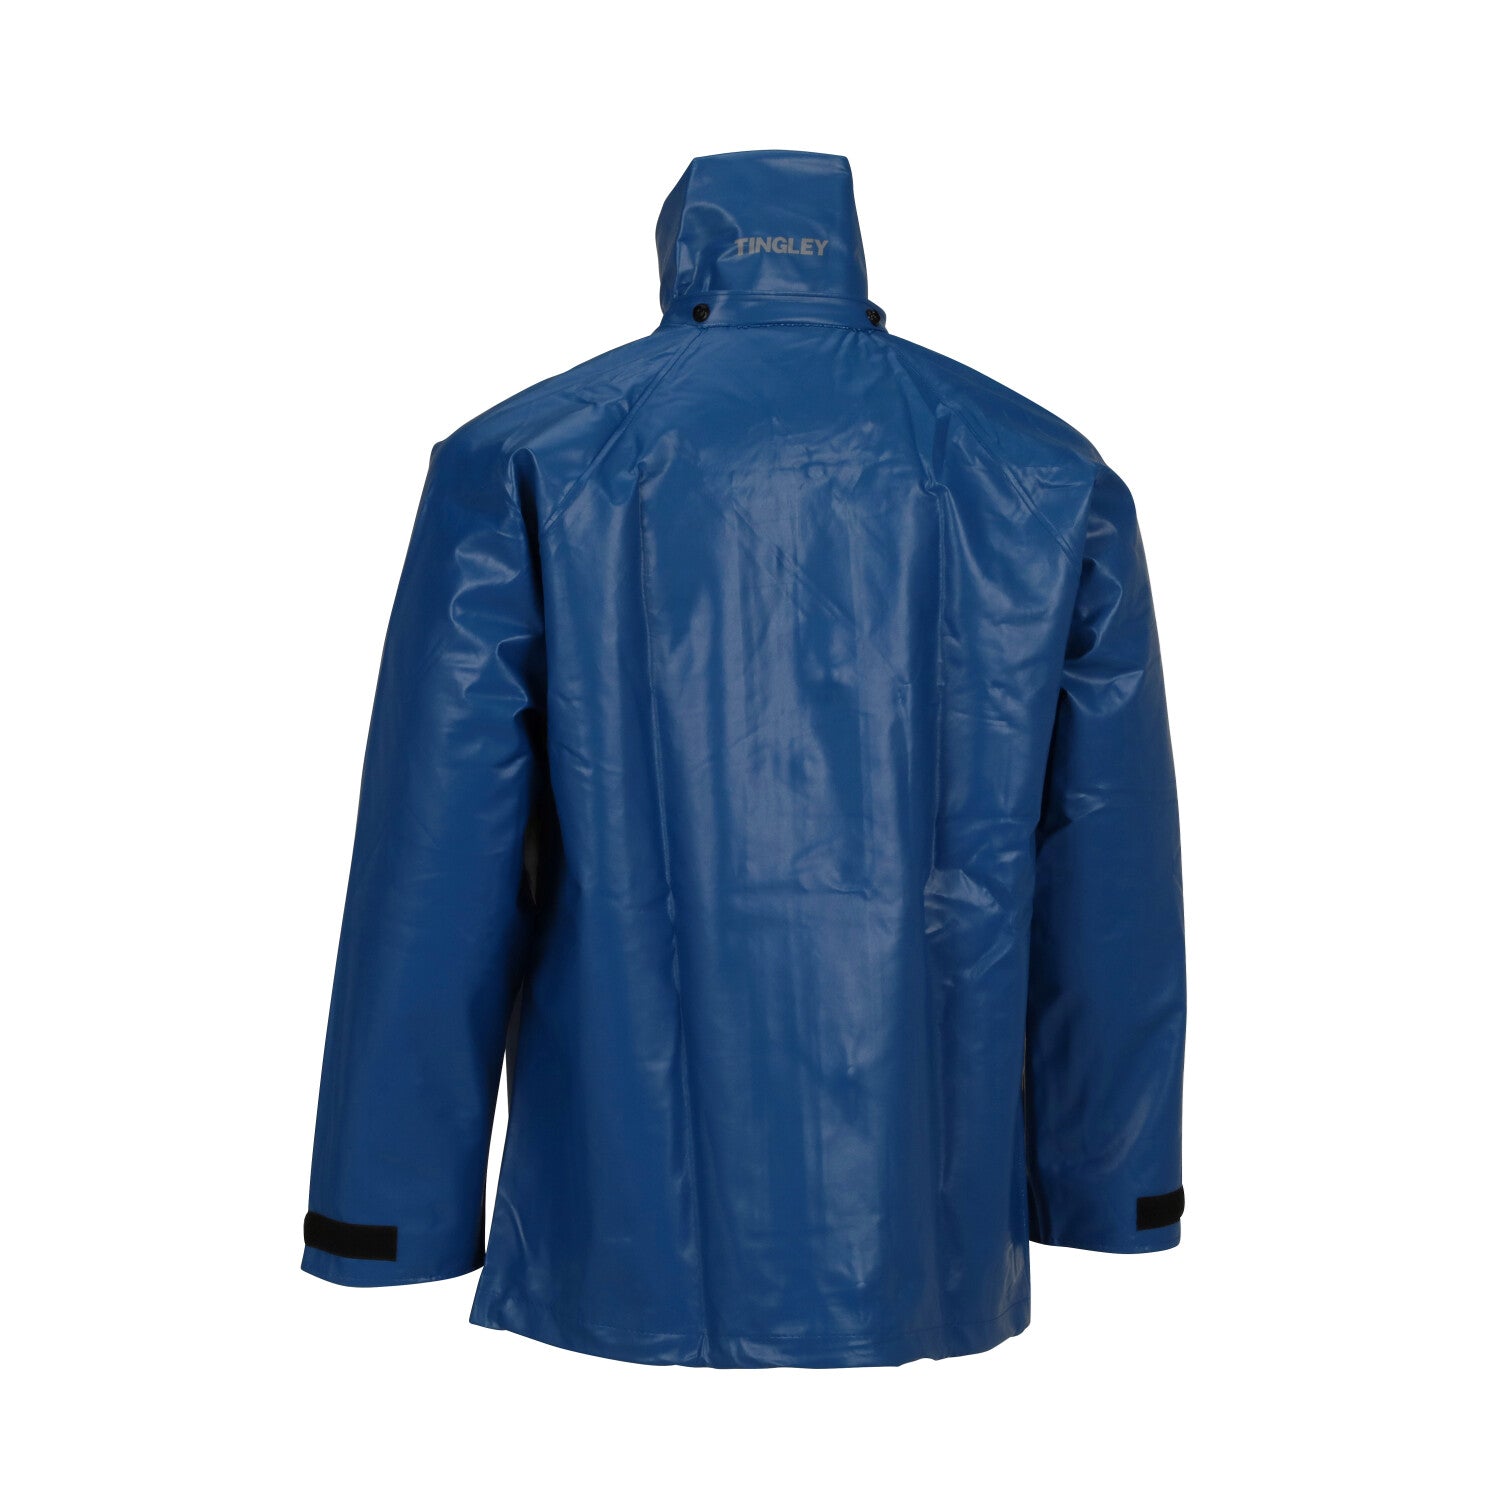 Tingley Eclipse Blue FR Jacket Sz: 3XL